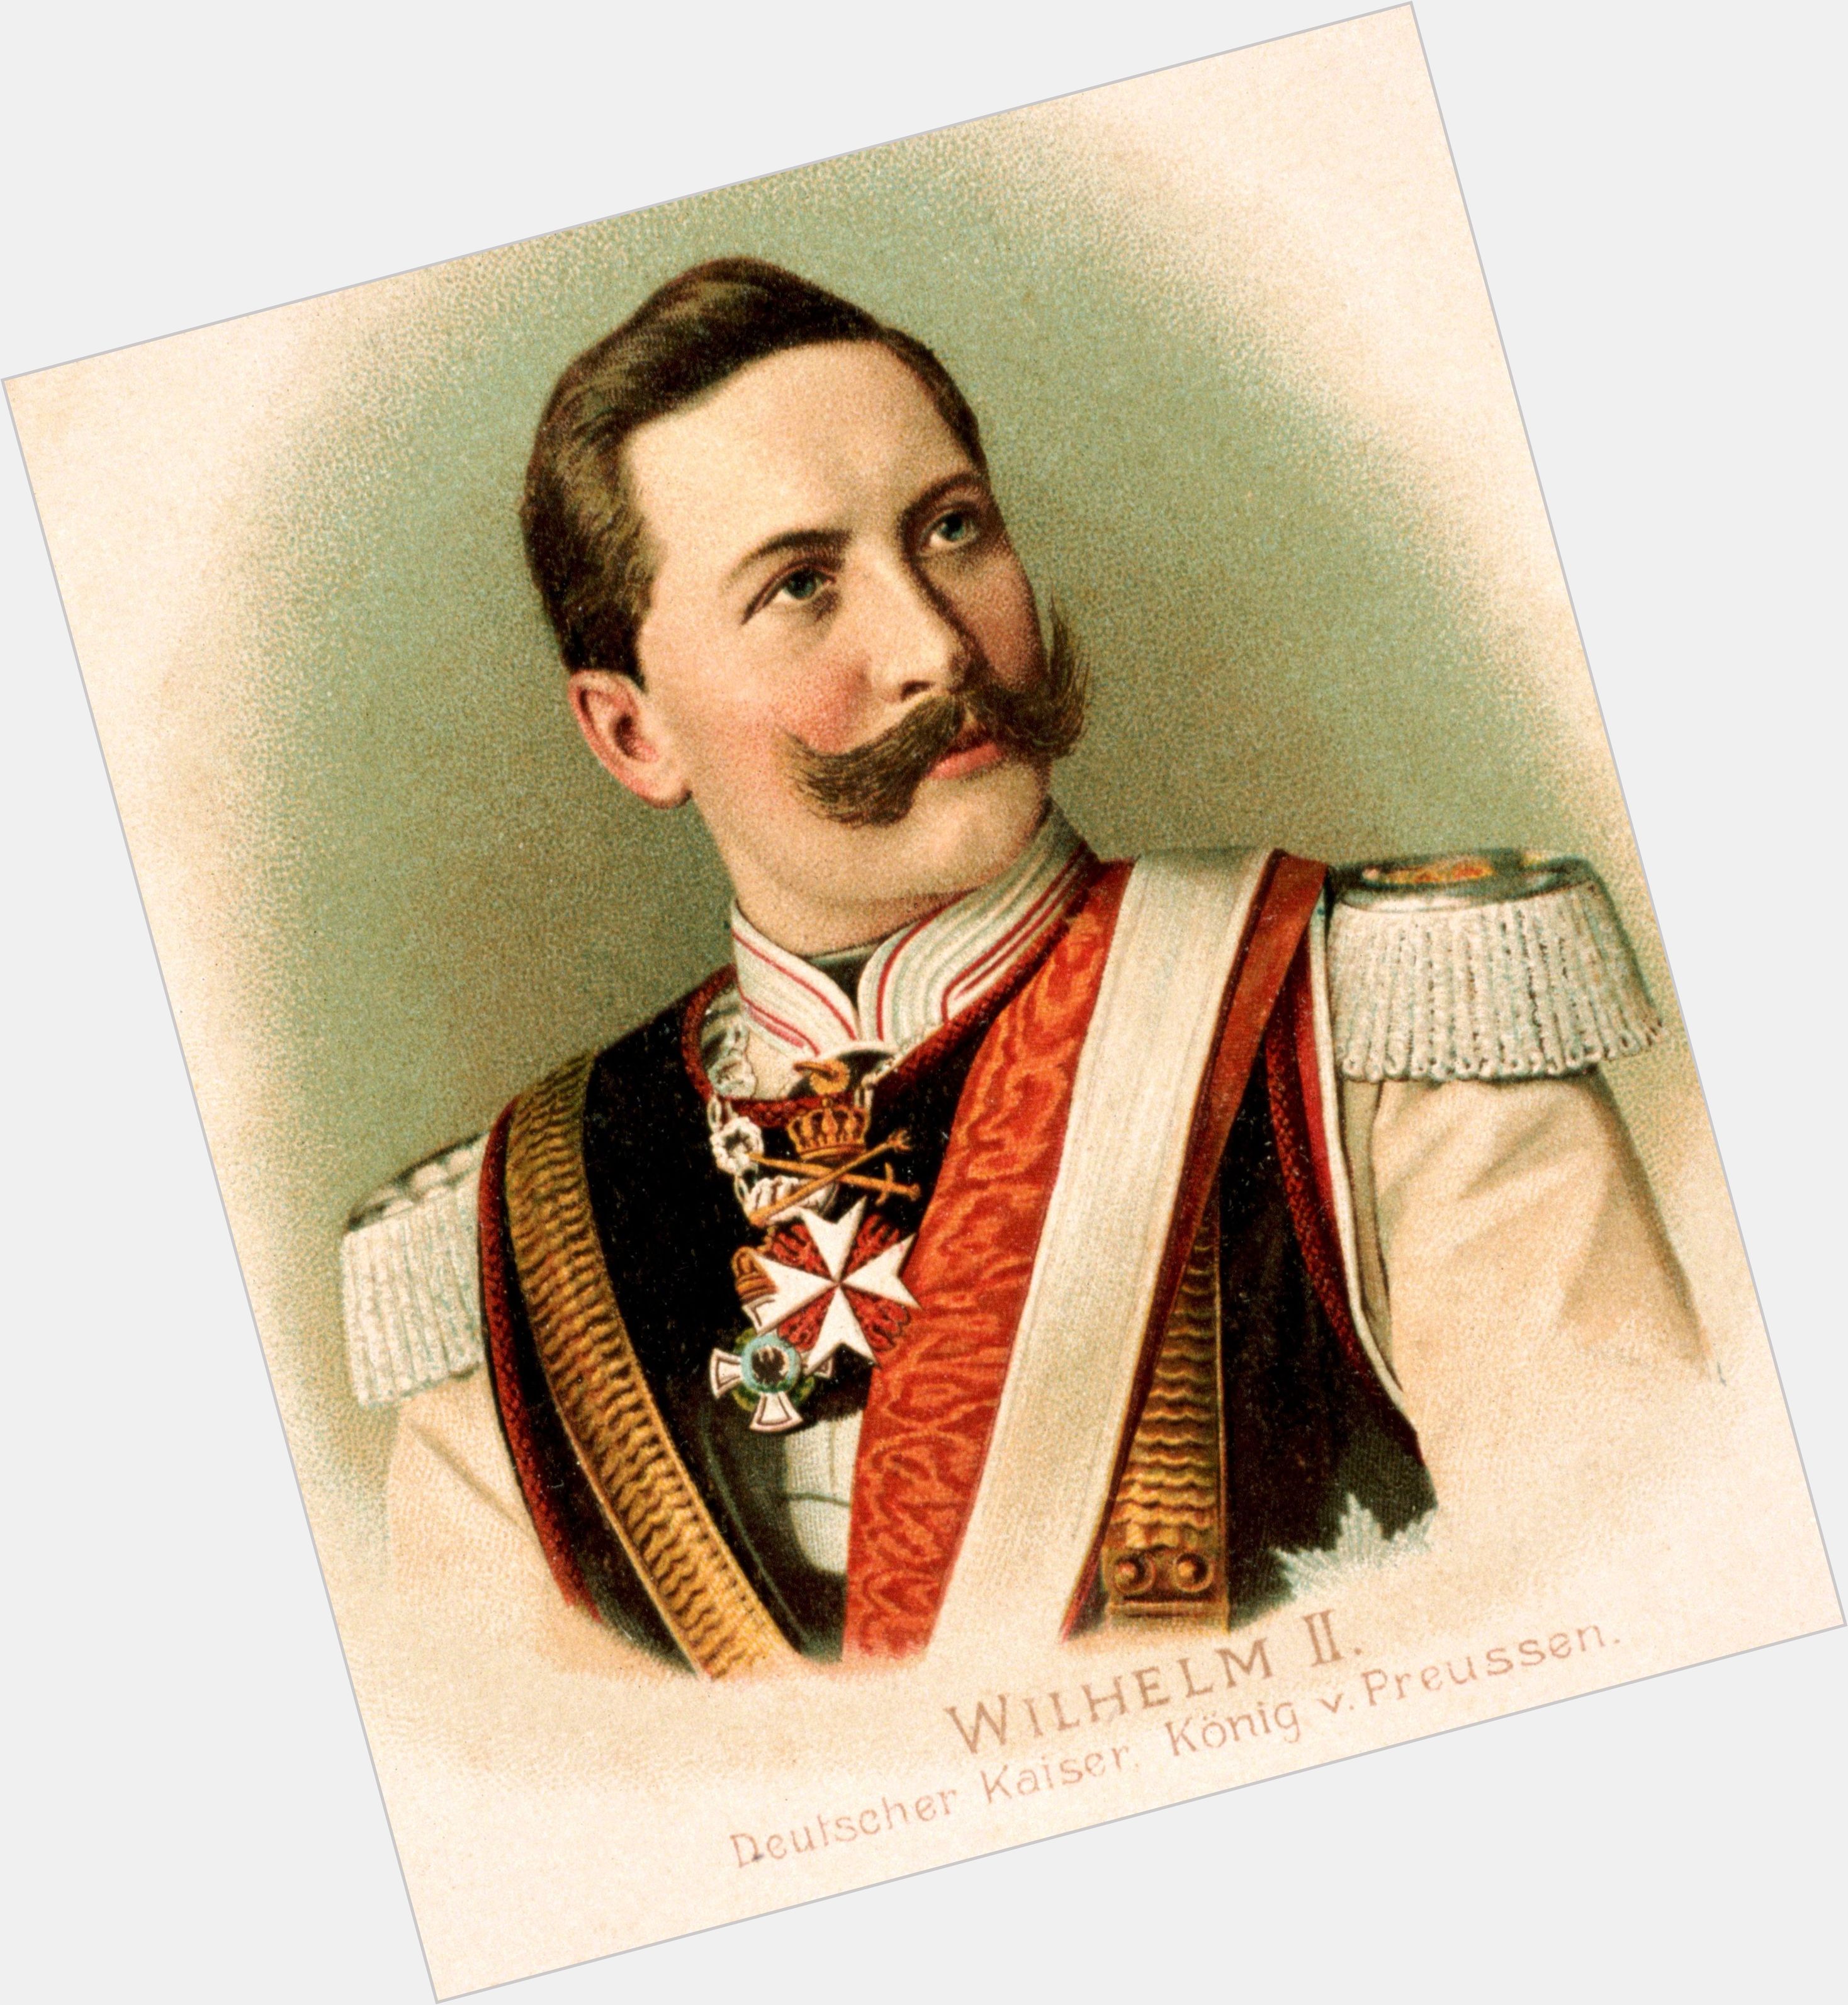 Wilhelm Ii German Emperor  light brown hair & hairstyles